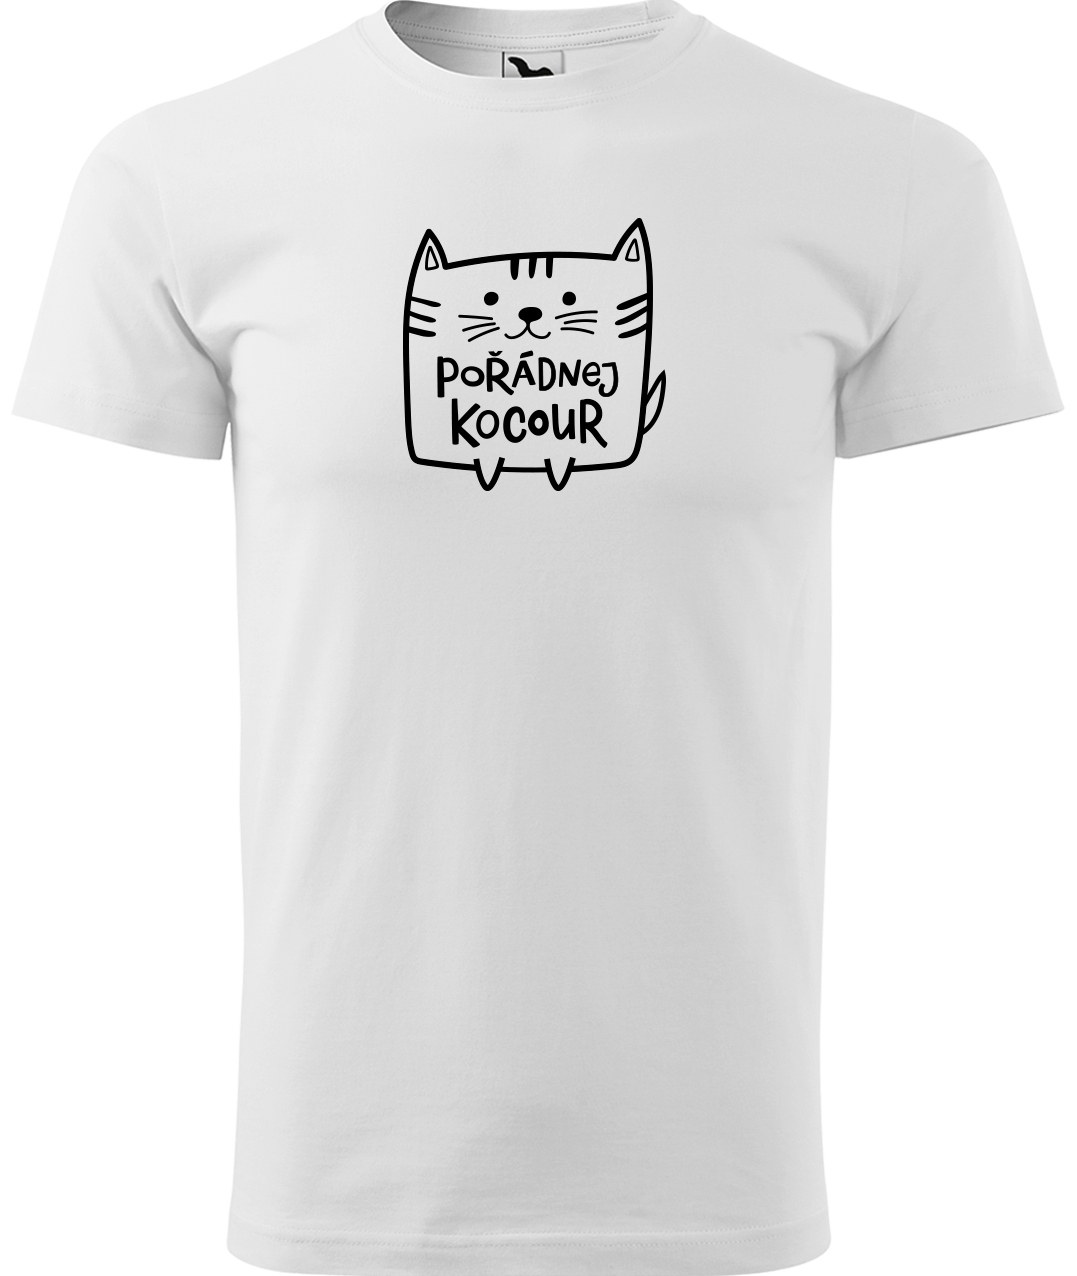 Pánské tričko s kočkou - Pořádnej kocour Velikost: S, Barva: Bílá (00)